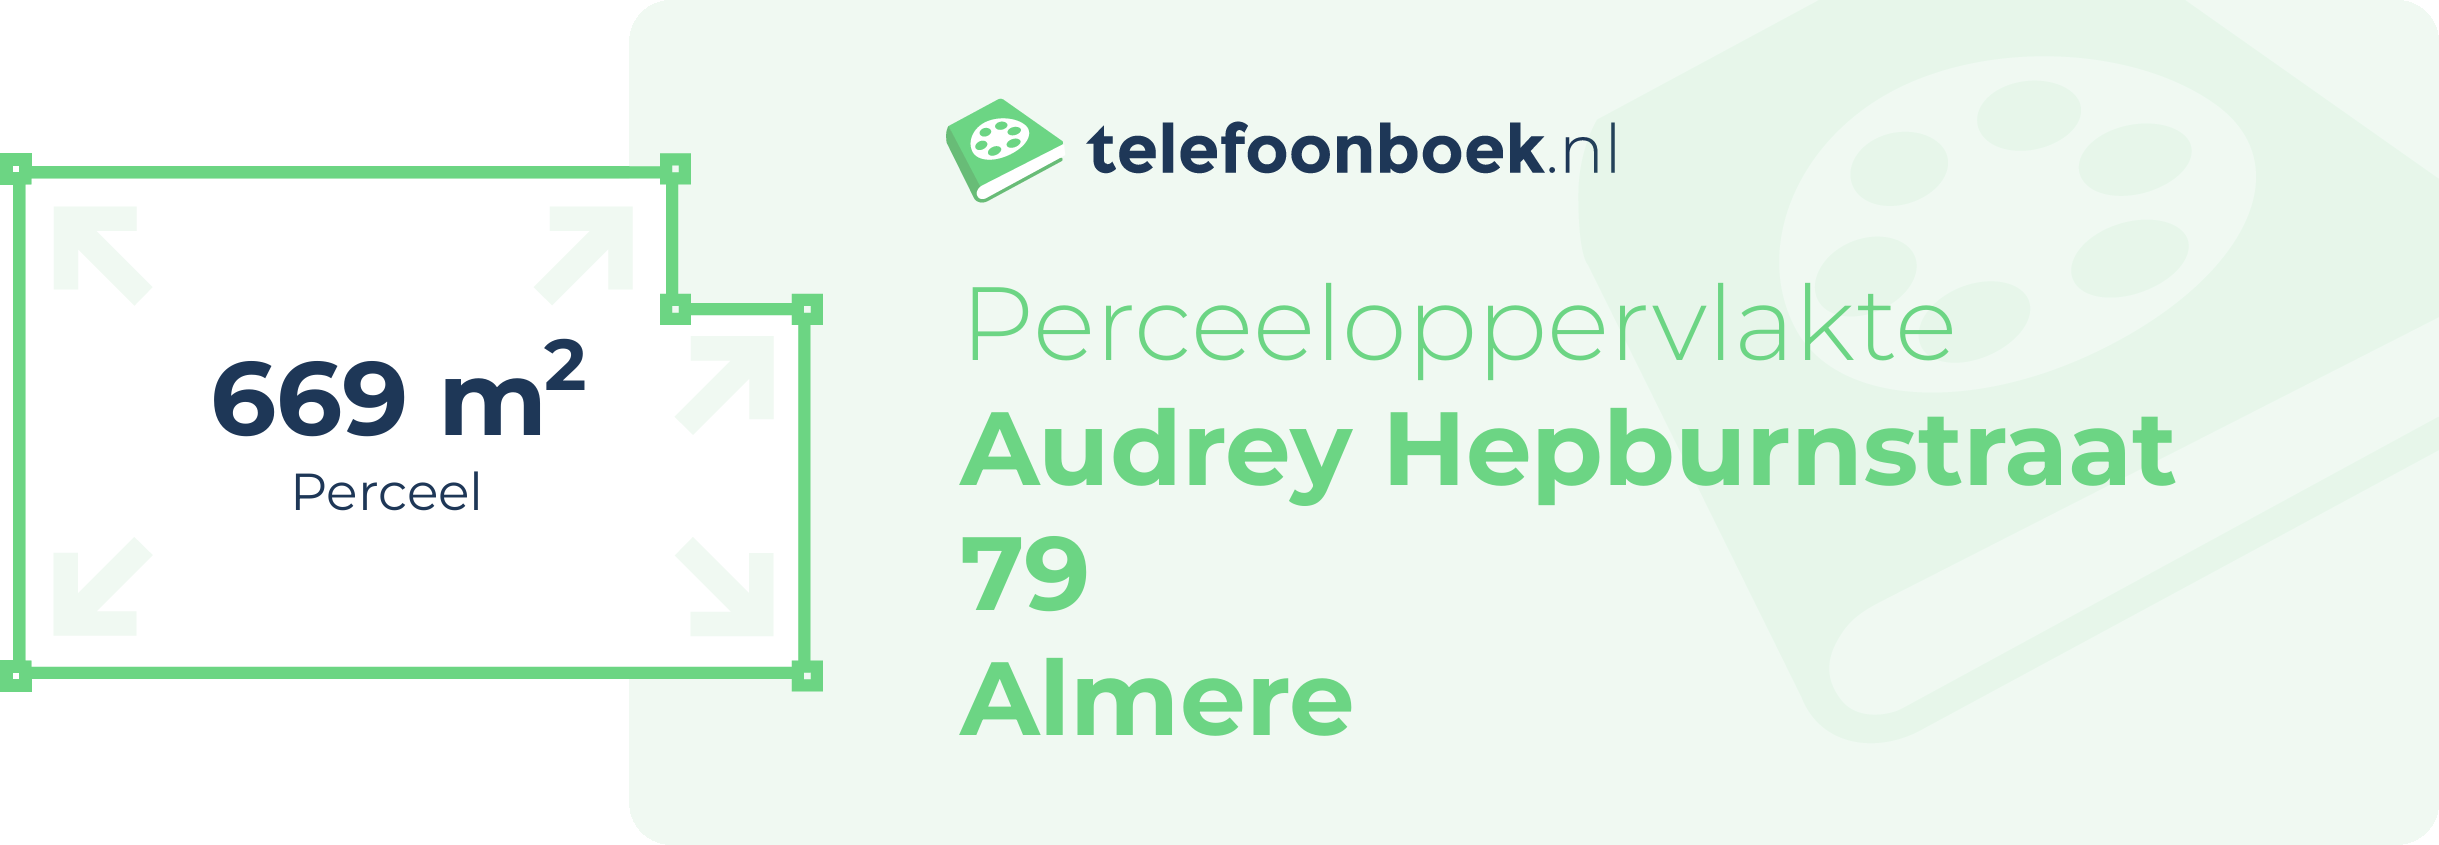 Perceeloppervlakte Audrey Hepburnstraat 79 Almere